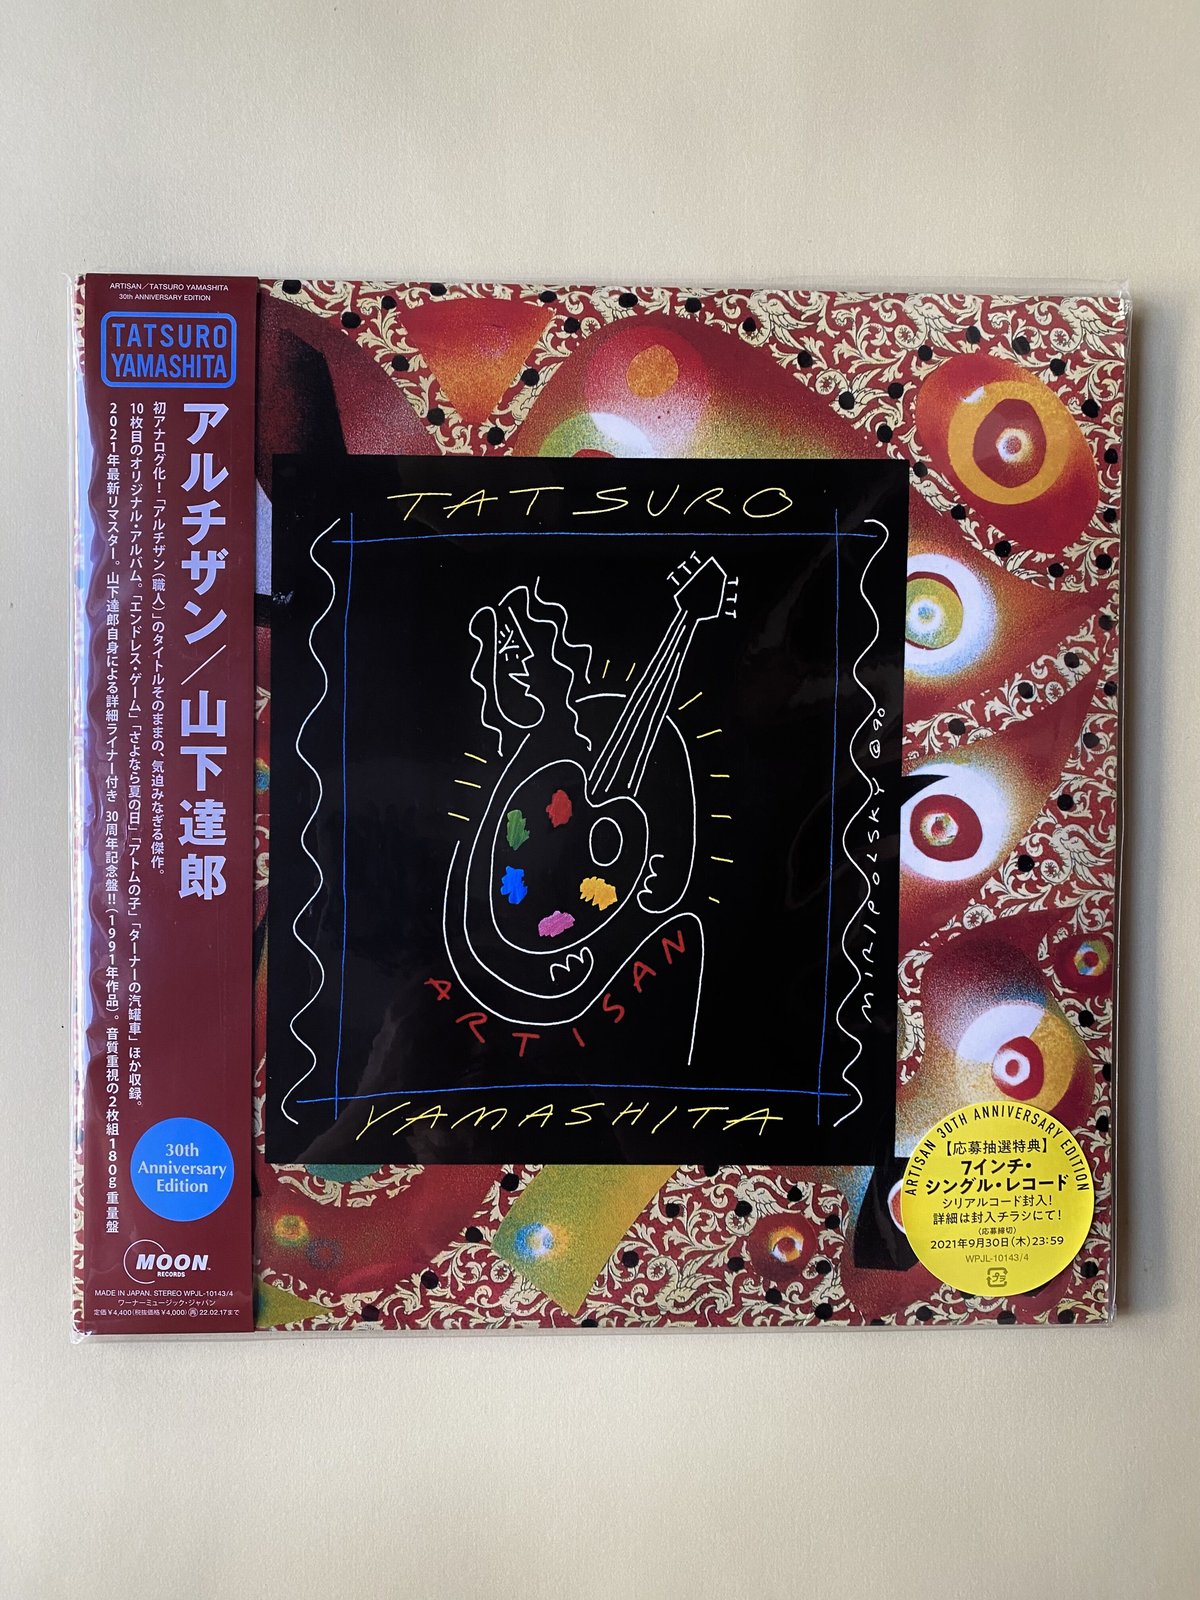 山下達郎 ARTISAN (30th Anniversary Edition) - 邦楽